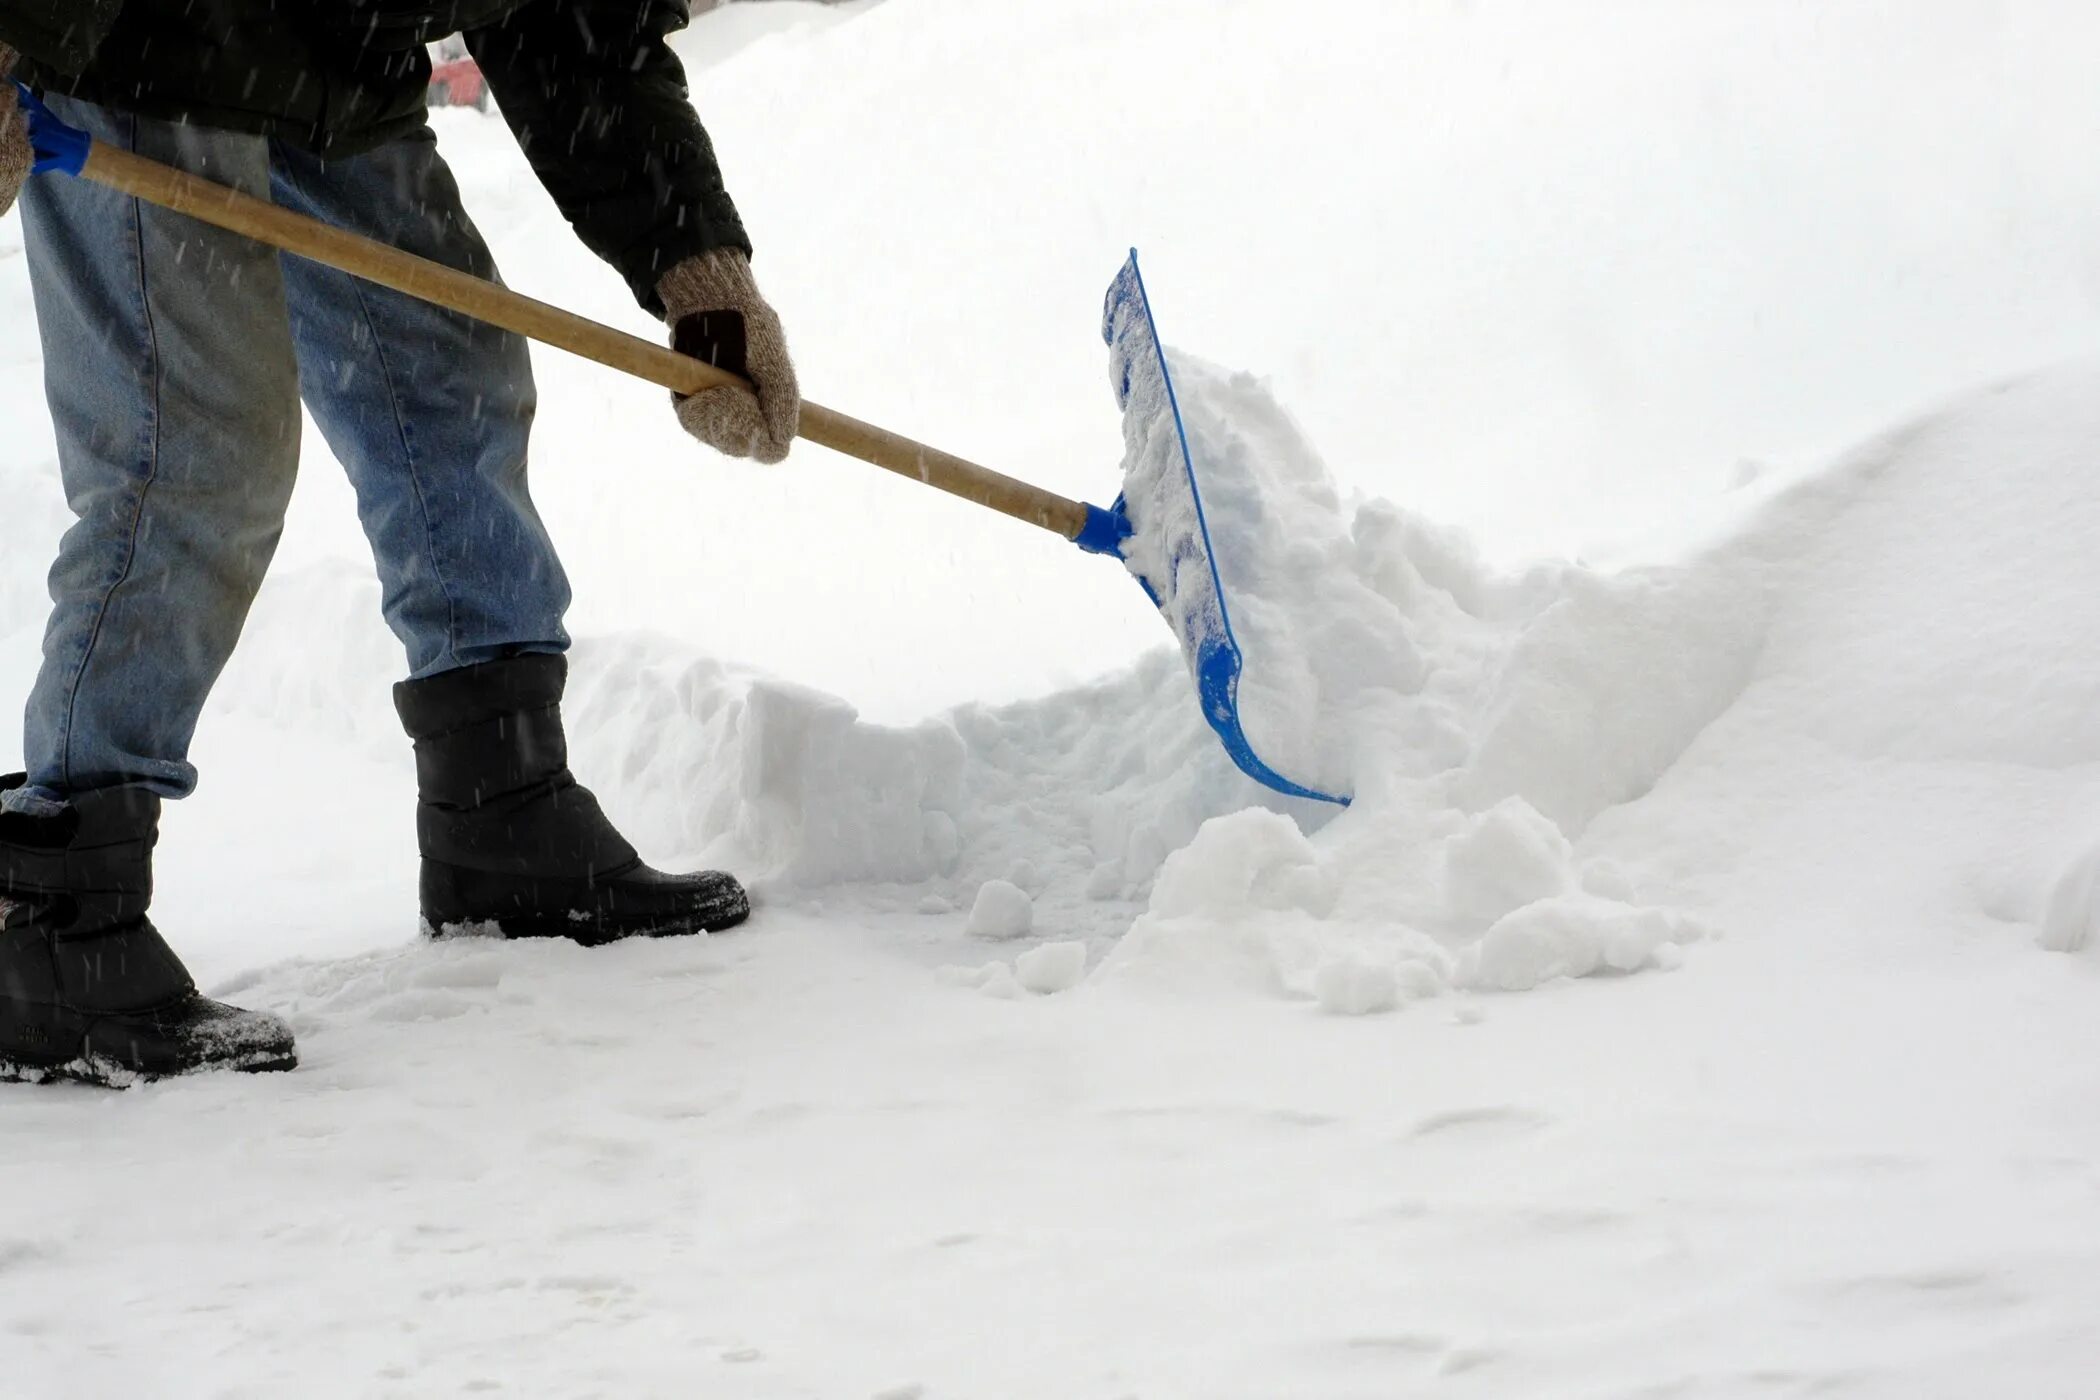 Уборка снега. Лопата для уборки снега. Убирает снег. Уборкака снега. Кидает лопатой